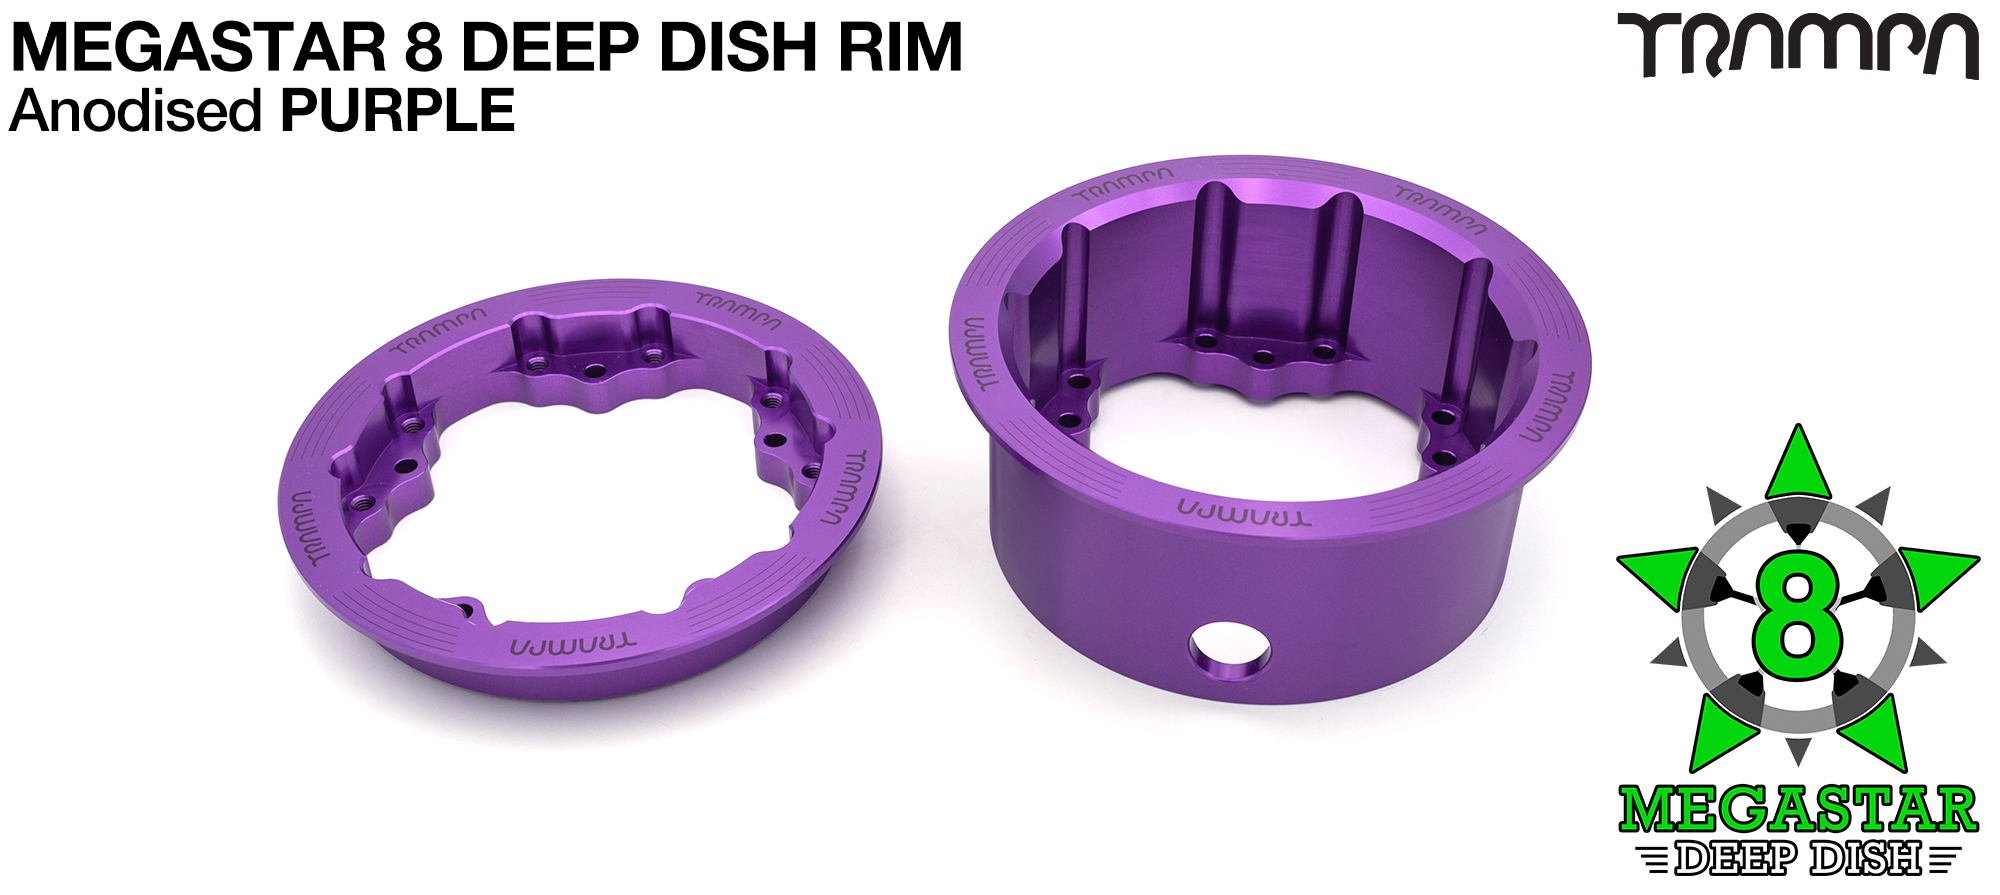 3.75x 2.5 Inch DEEP-DISH MEGASTAR Rims - PURPLE 